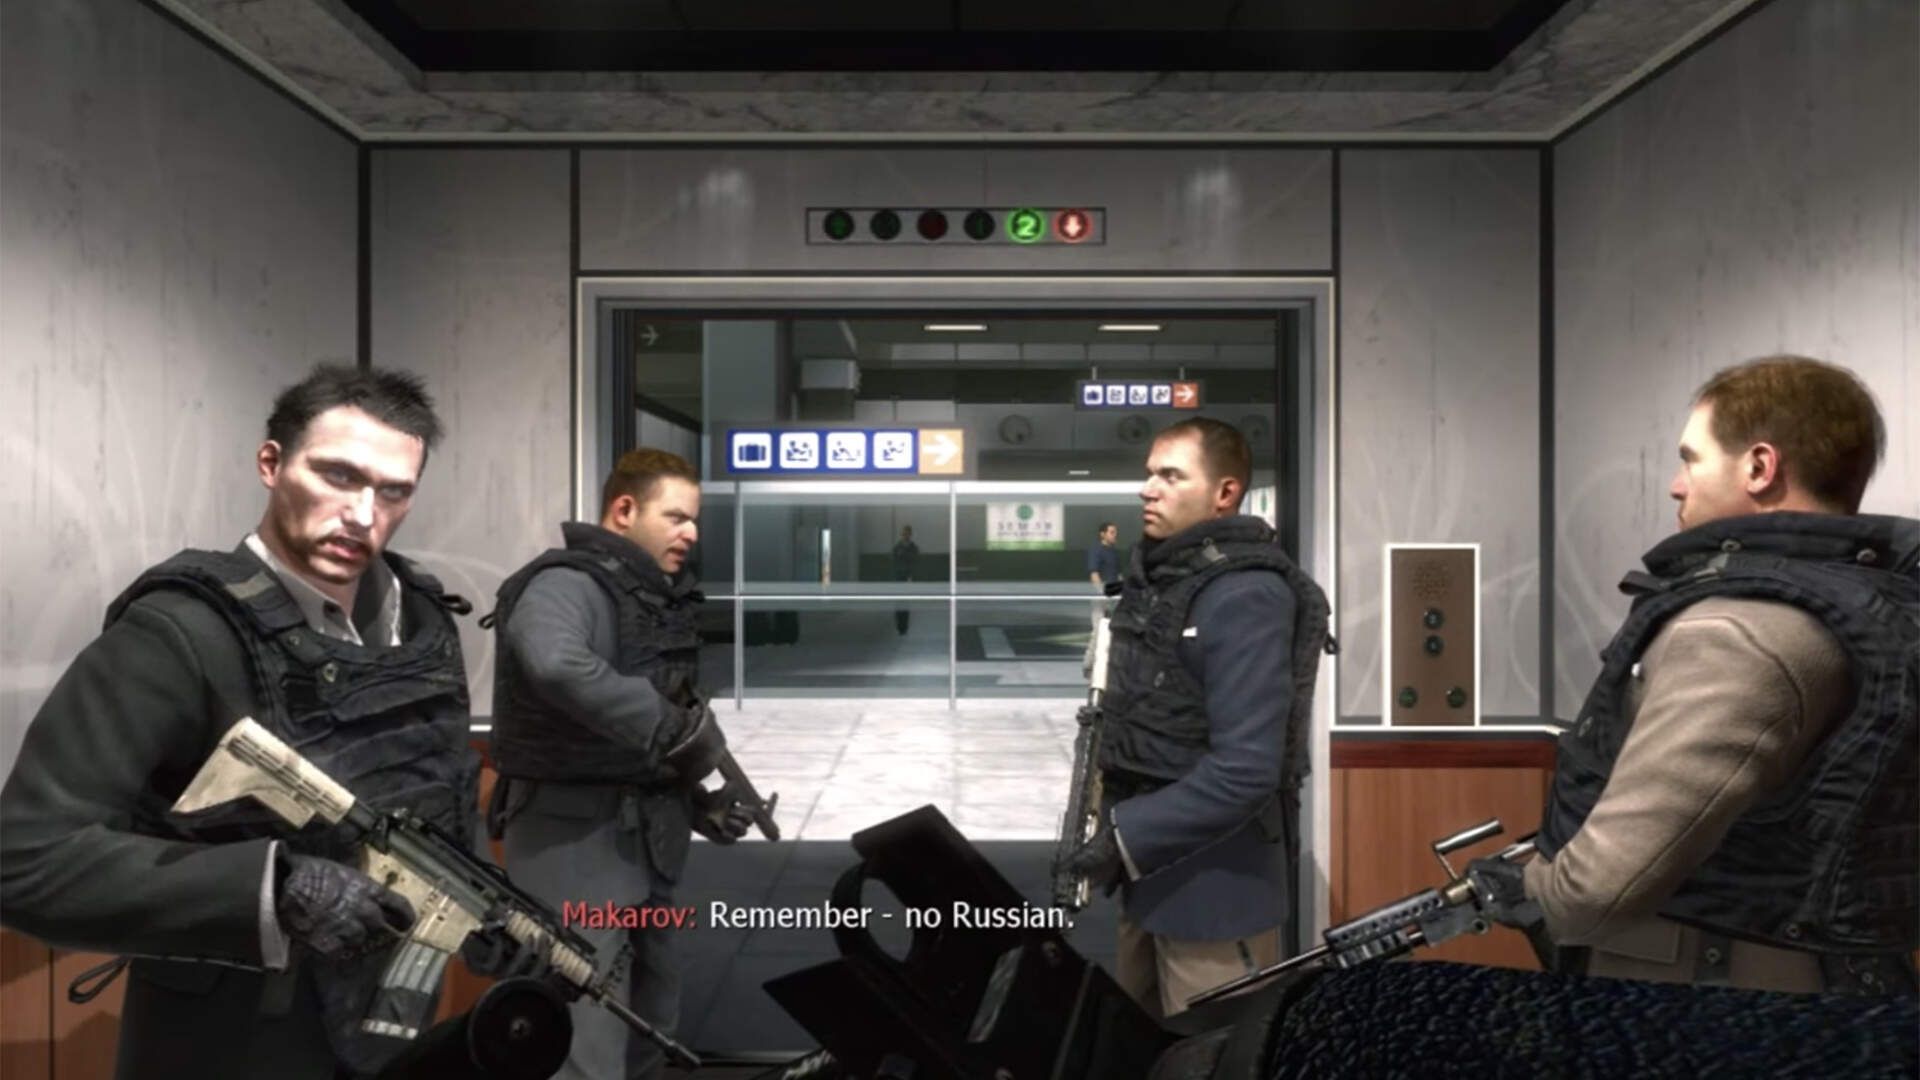 Une image fixe du jeu vidéo Modern Warfare II montrant quatre hommes armés du point de vue d'un autre. Les sous-titres montrent un nom de personnage 'Makarov' disant 'Remember - No Russian'.